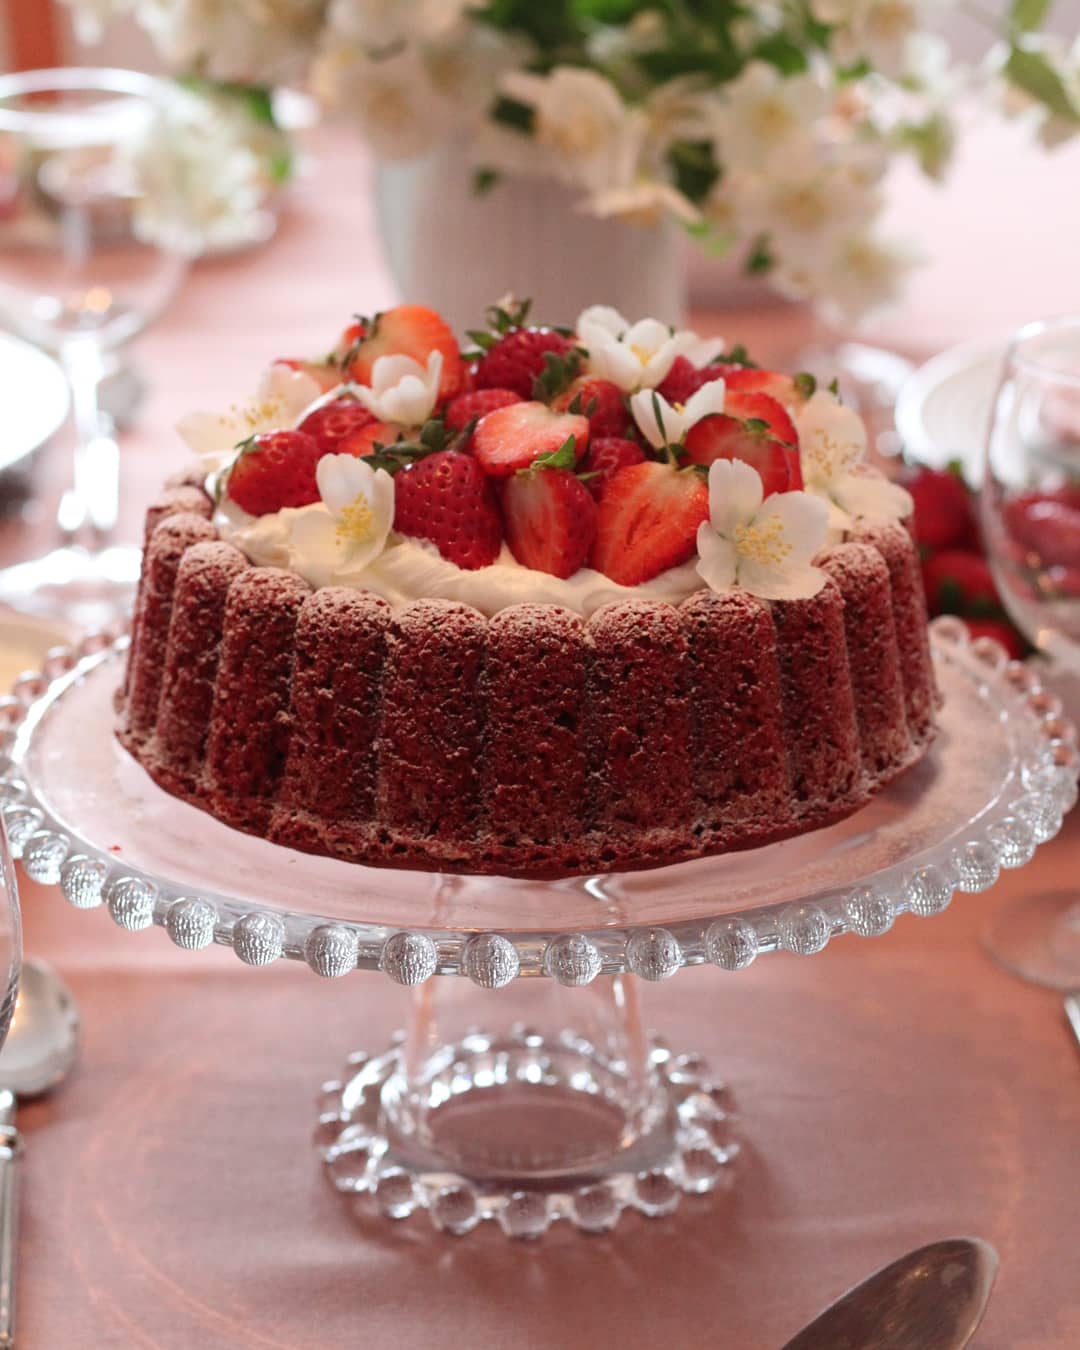 Que tal um bolo red velvet no seu aniversário? - CenárioMT